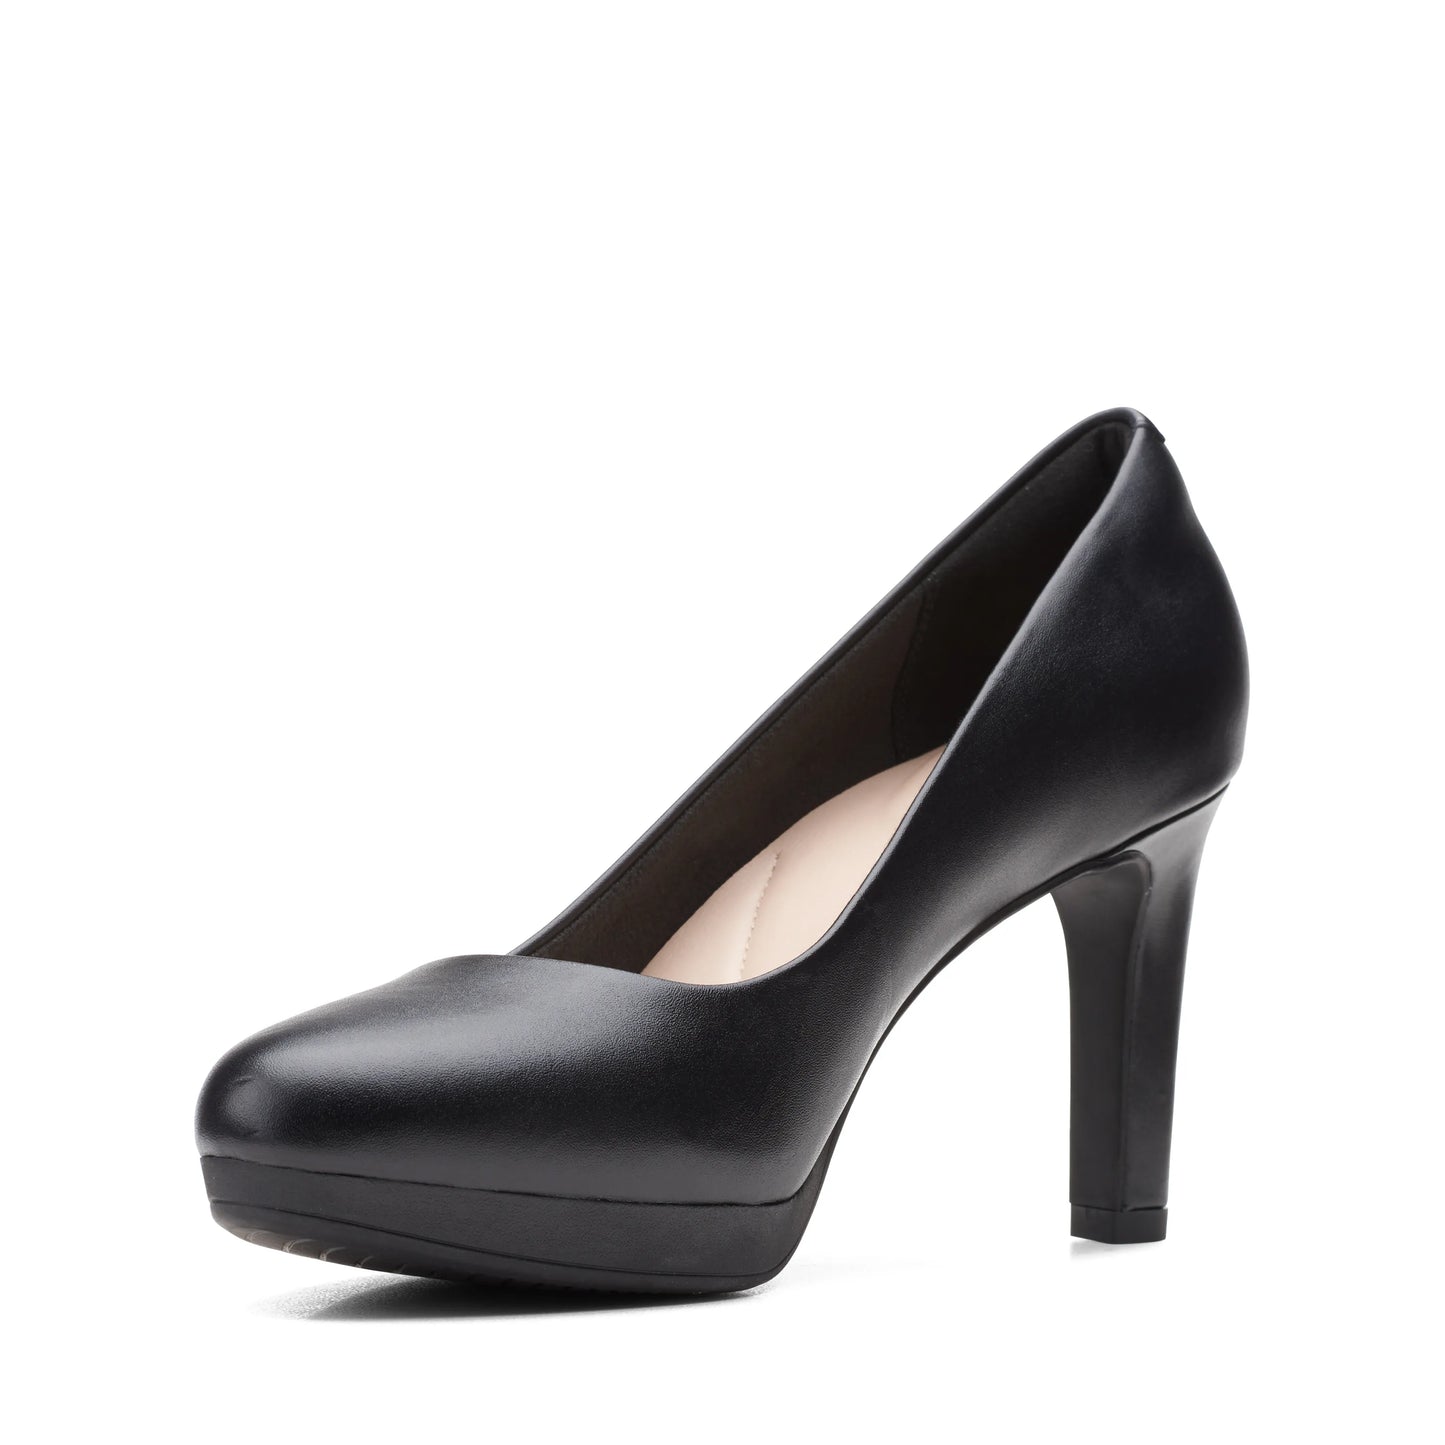 Zapatos De Tacón De La Marca Clarks Para Mujer Modelo Ambyr Joy Black Leather En Color Negro